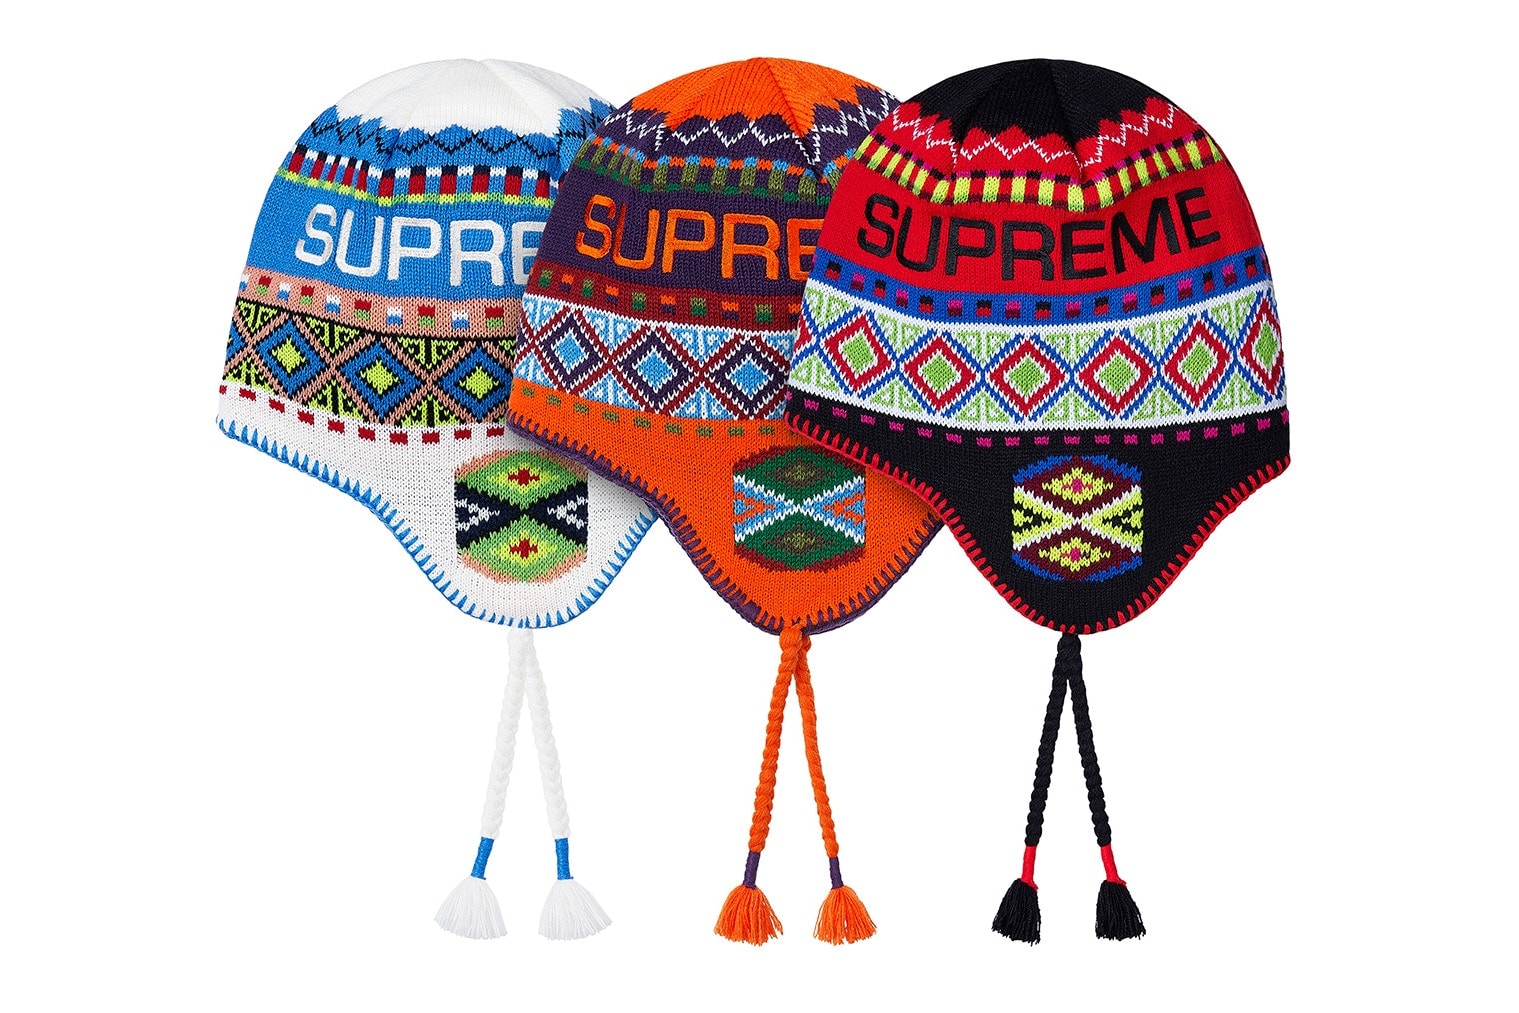 슈프림 2017 가을, 겨울 19주 차 발매 제품군 모자 스카프 문진 썰매 Supreme 2017 week 19 Fall Winter drop products cap hat sled hoodie